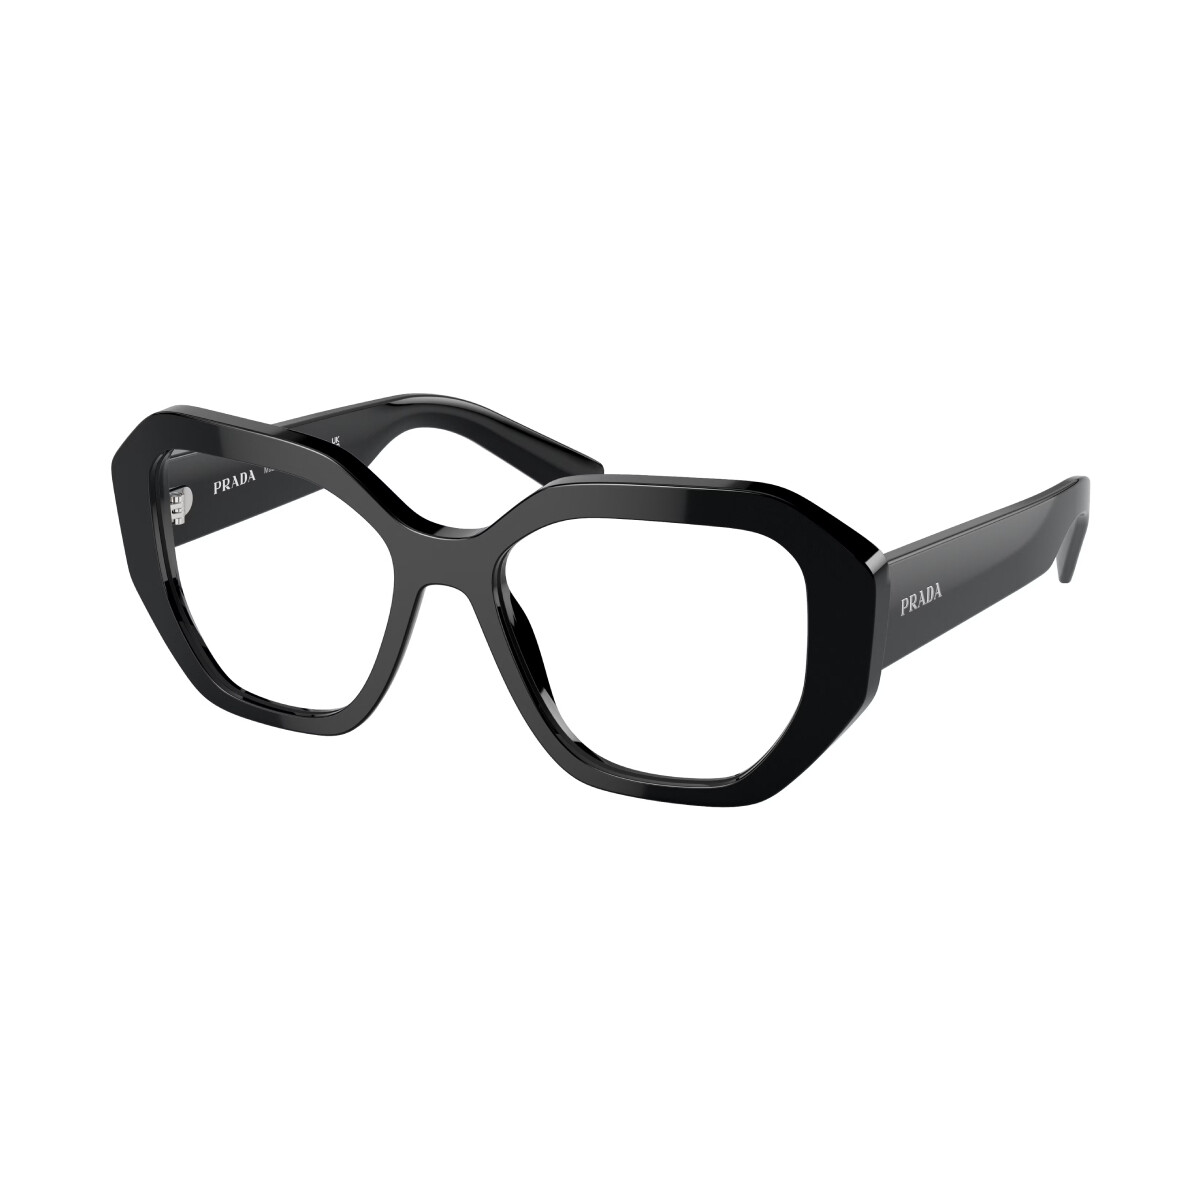 Orologi & Gioielli Occhiali da sole Prada PR A07V Occhiali Vista, Nero, 52 mm Nero